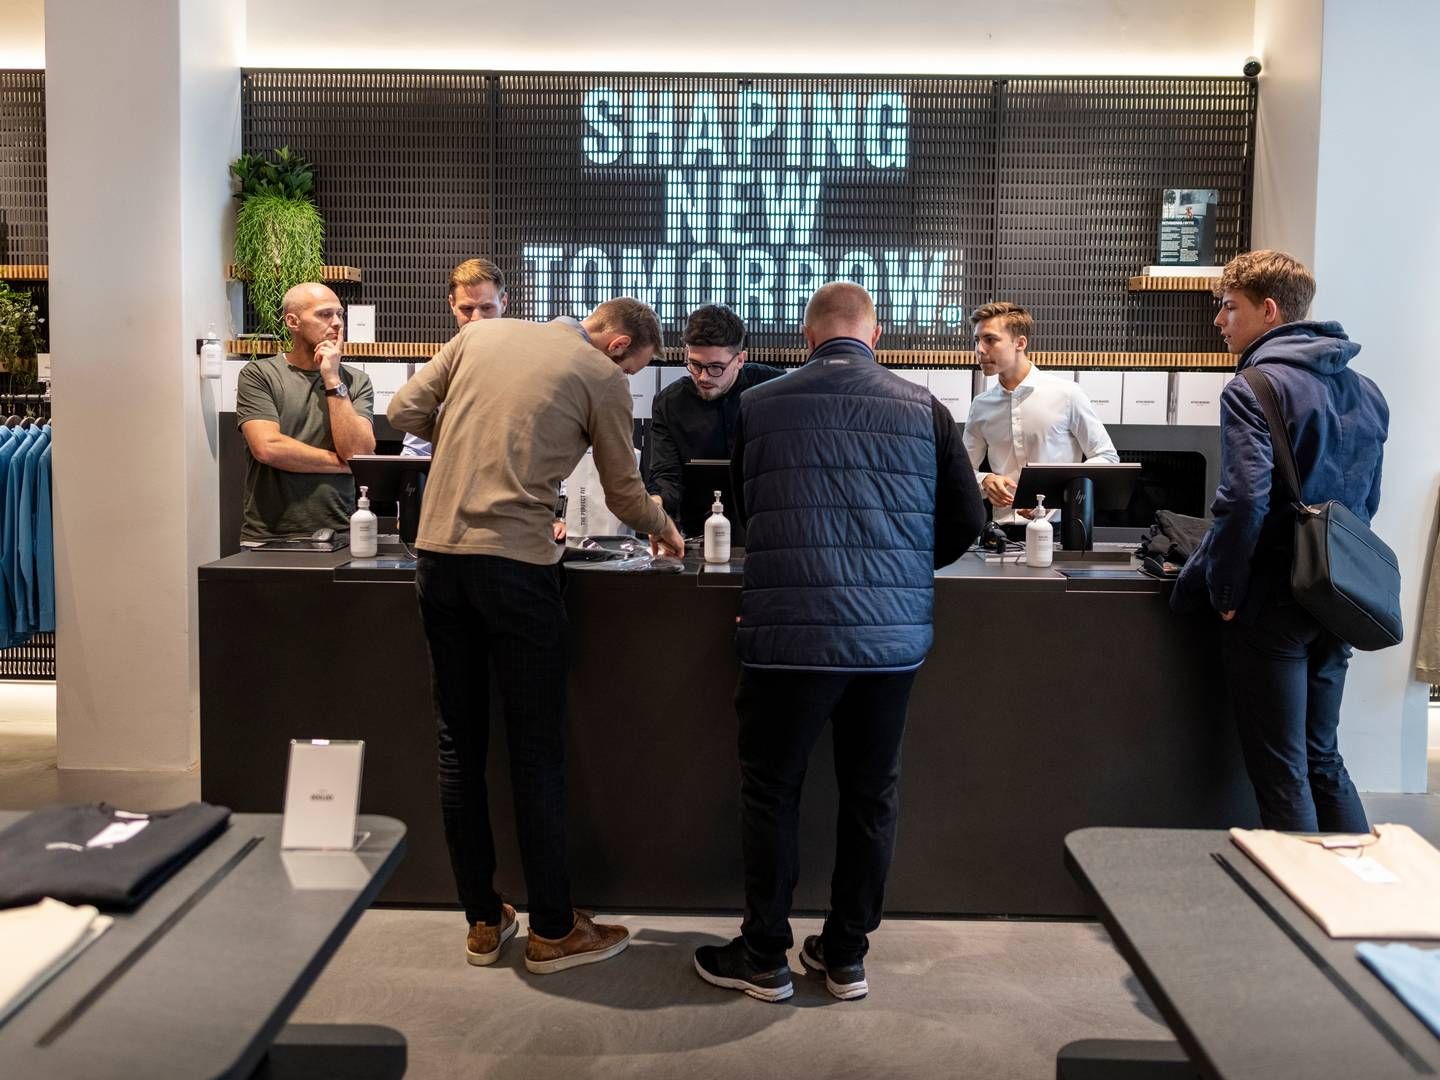 Modevirksomheden Shaping New Tomorrow er et af de danske selskaber, der har haft D2C-salg på sin webshop siden opstarten. Selskabet har i dag også seks fysiske butikker. | Foto: Joachim Ladefoged/Ritzau Scanpix